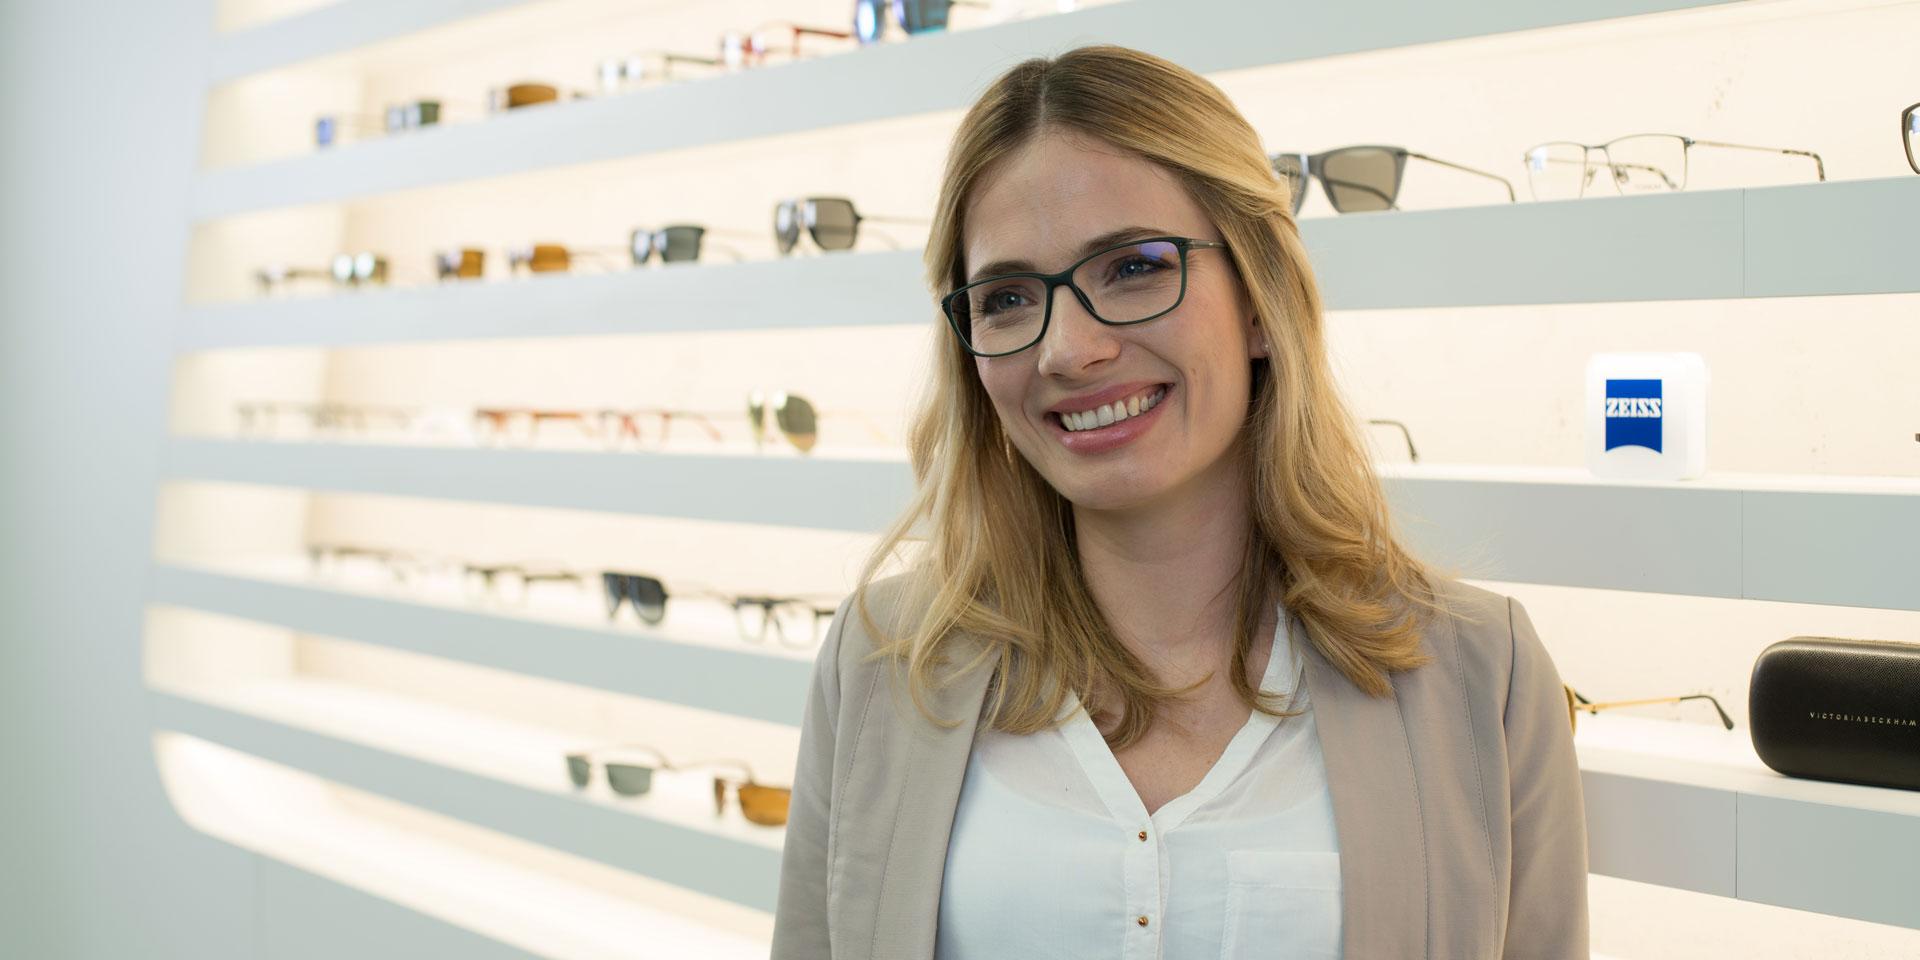 Dicas para comprar óculos: como encontrar os óculos certos para você.